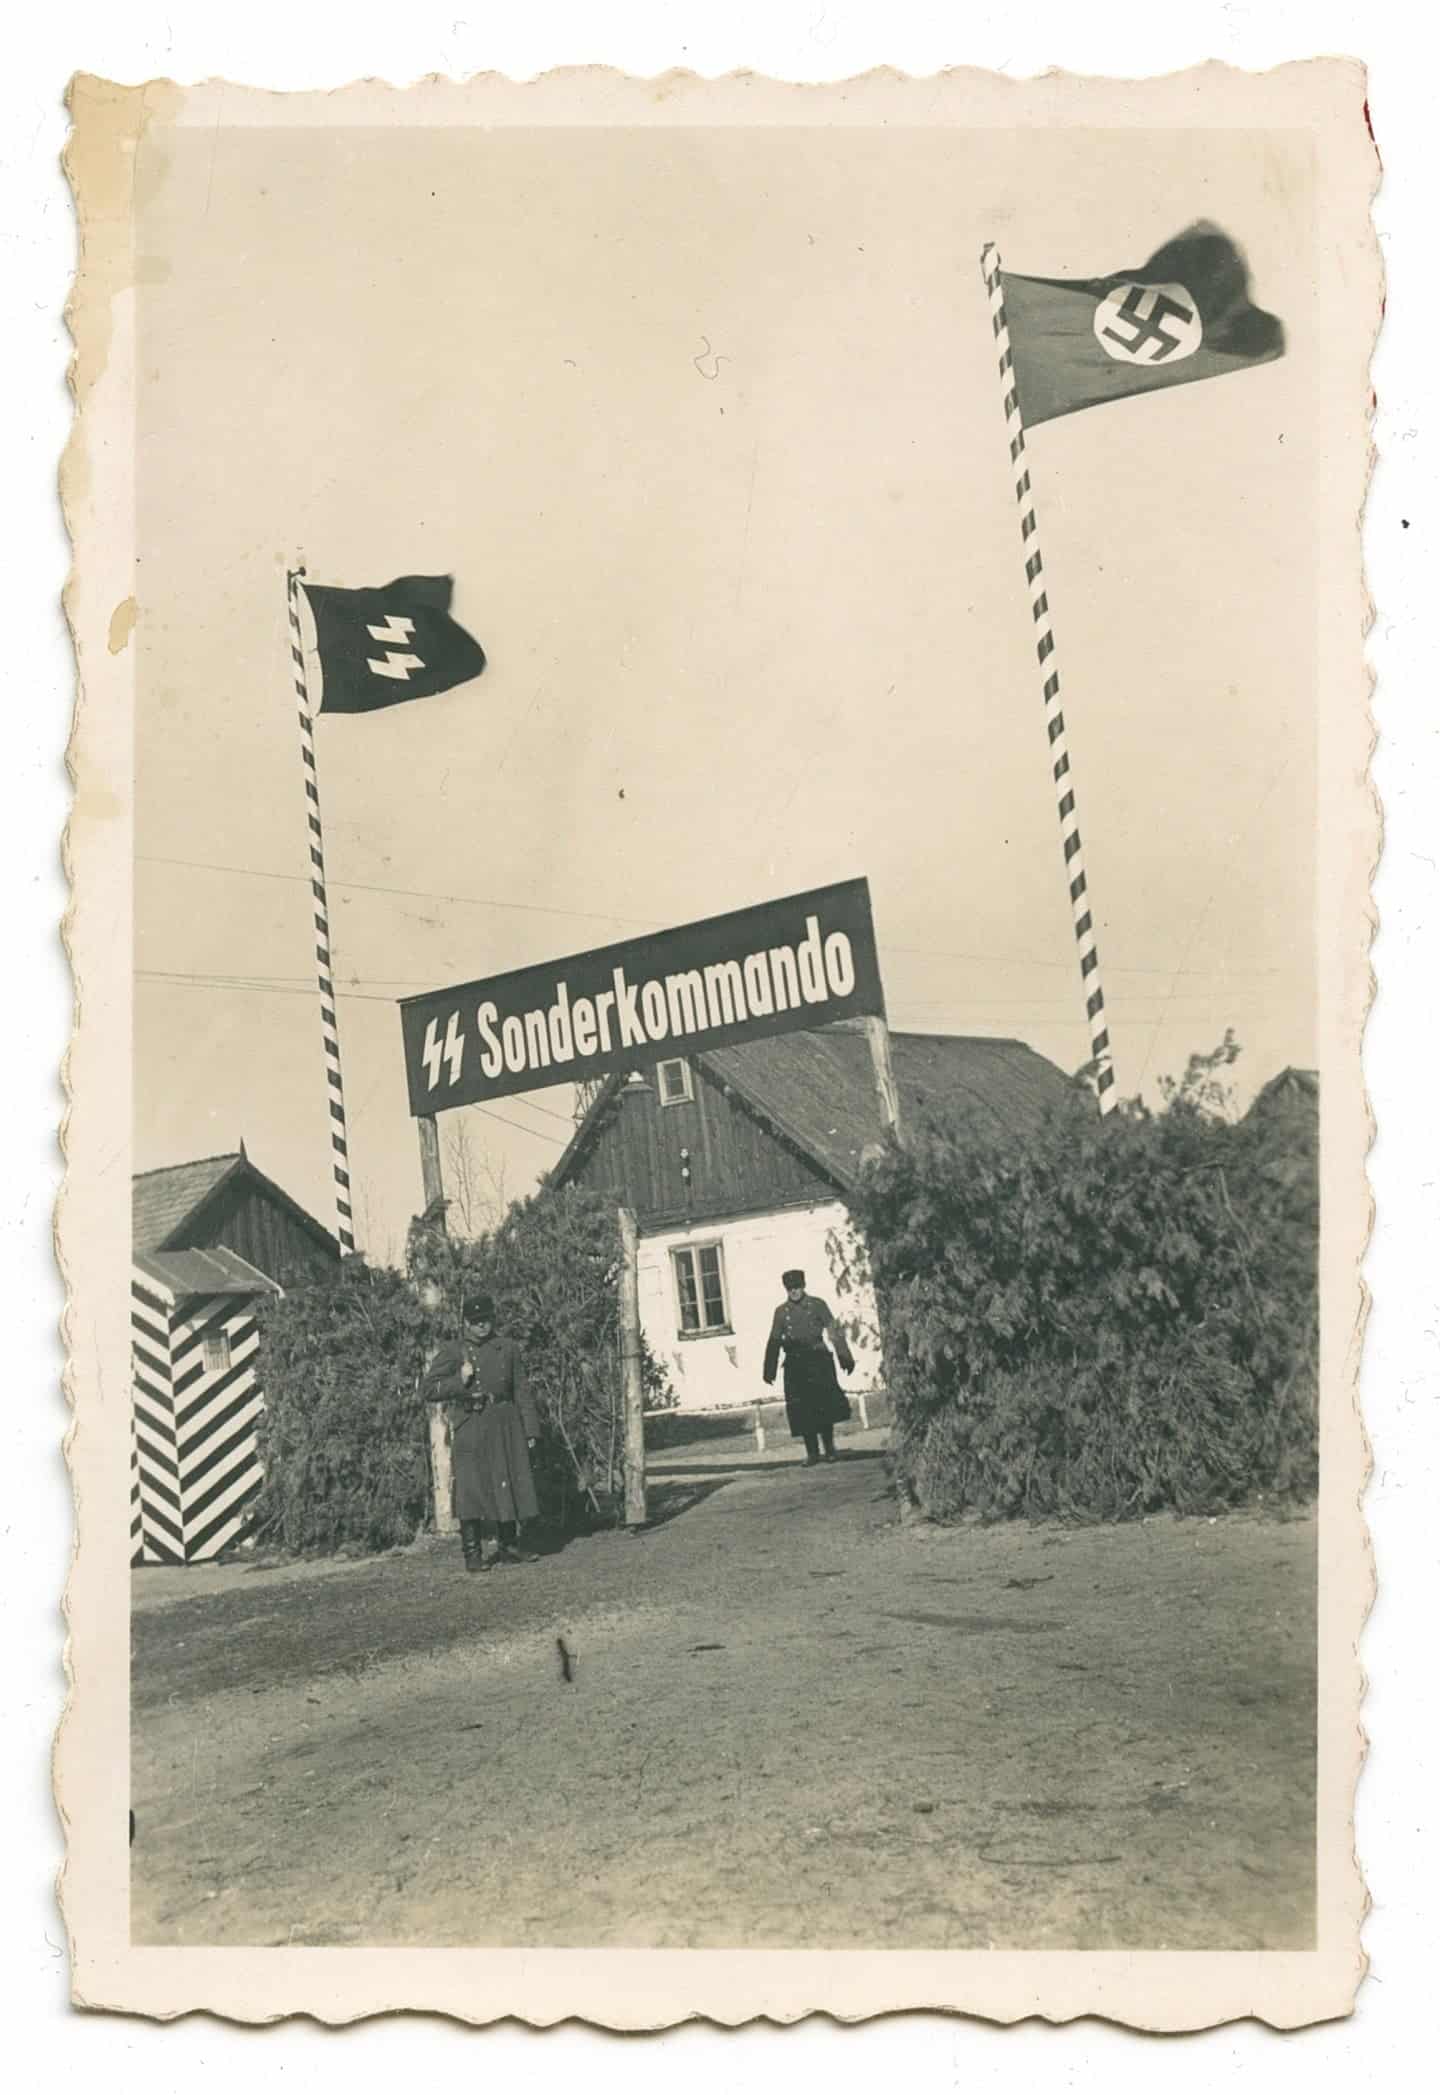 הכניסה לסוביבור עבור קורבנות שהחכו ברגל או לקחו עגלות אל המחנה (צילום: אוסף הפושע מסוביבור, המוזיאון לזכר השואה של ארצות הברית)